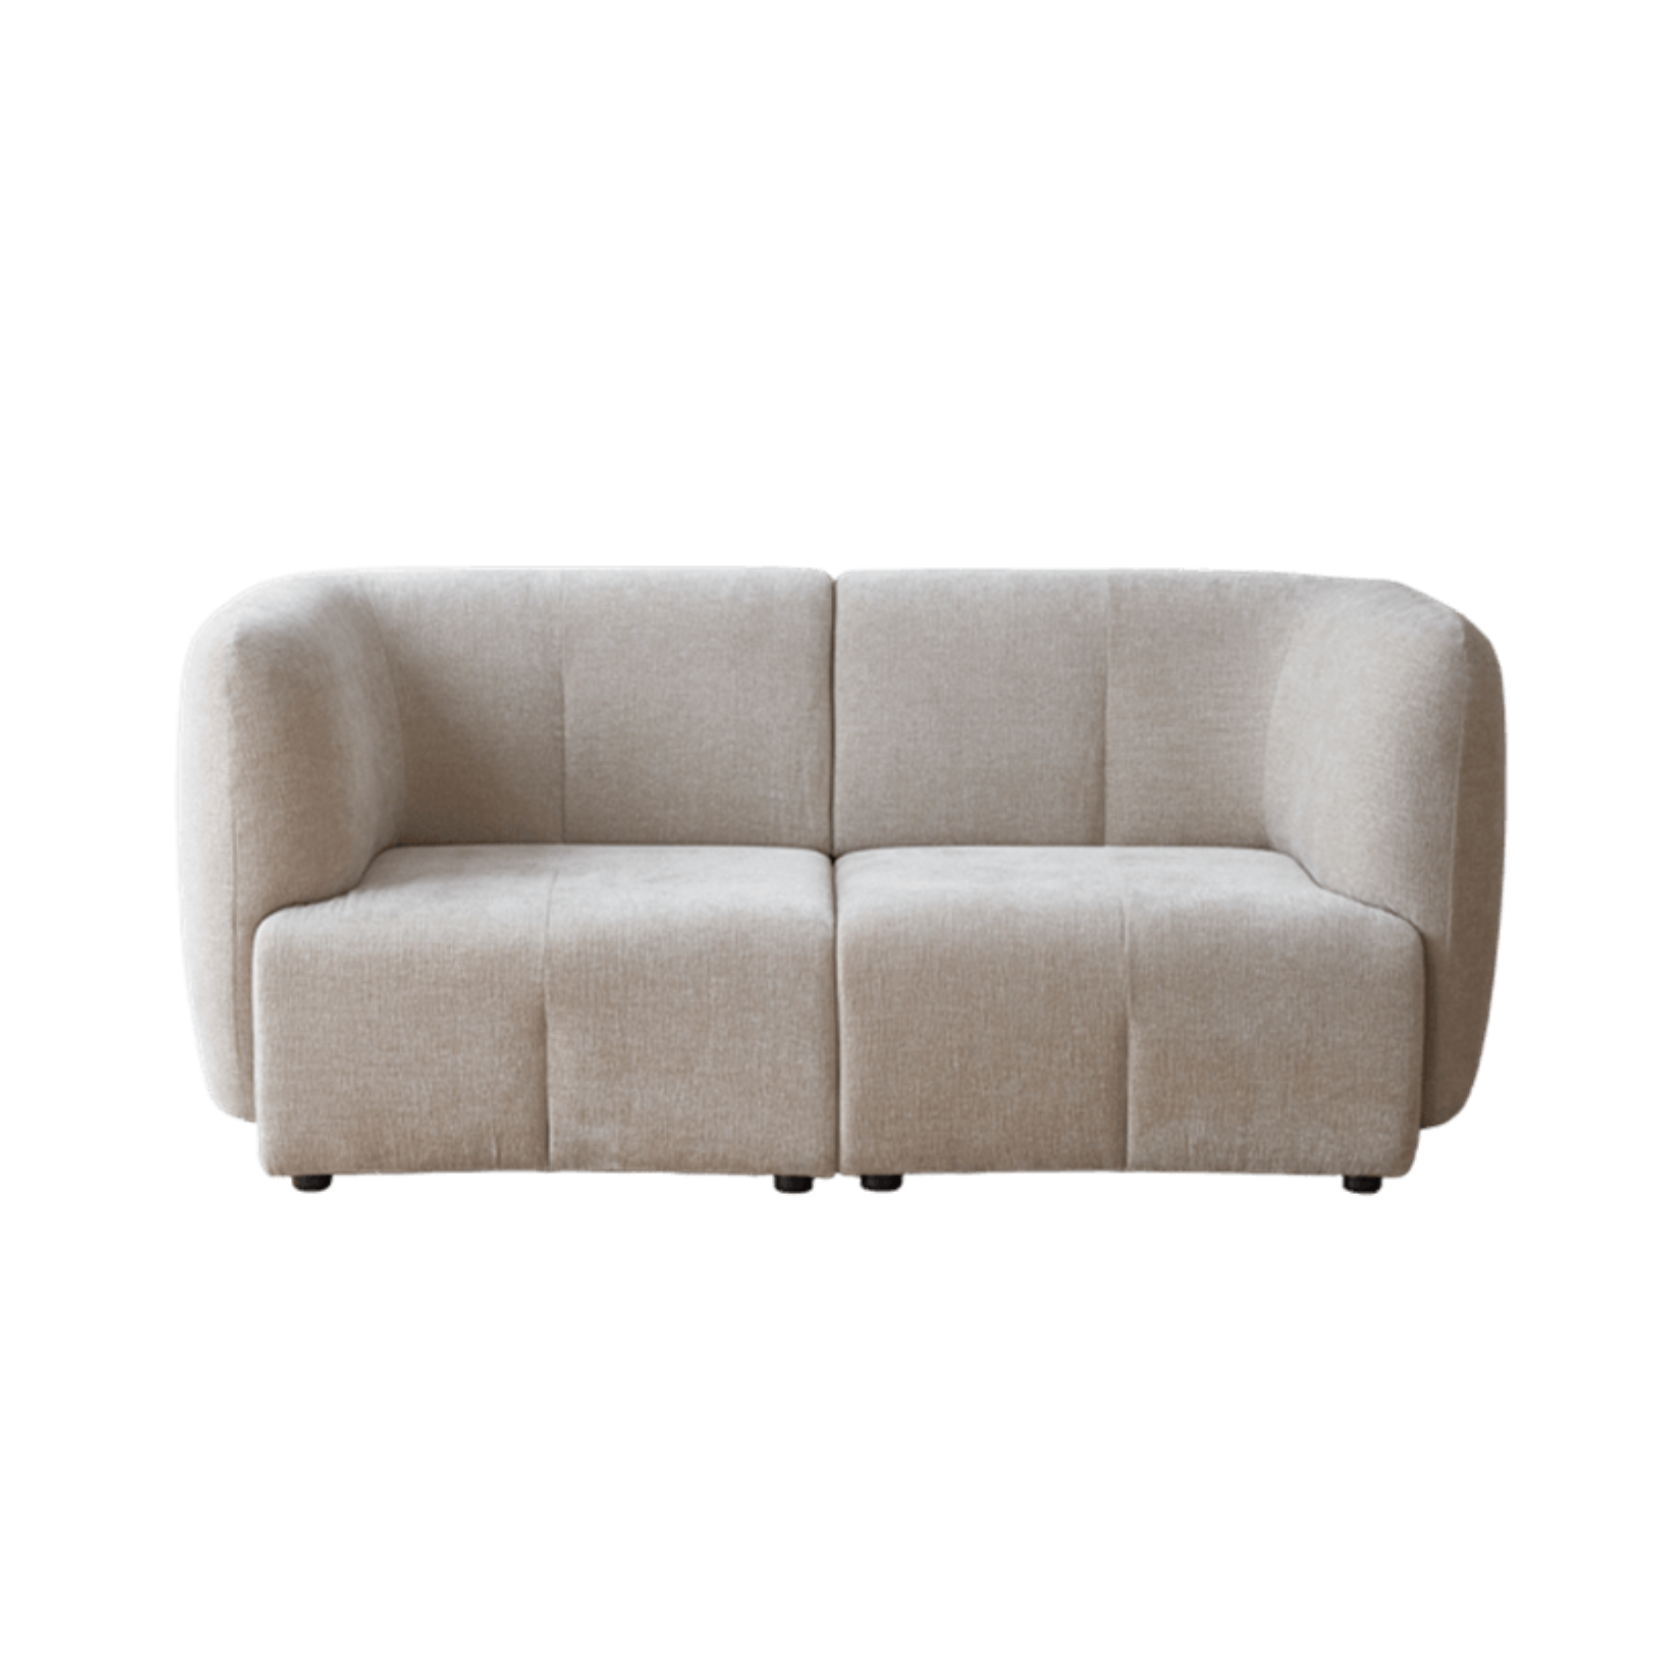 Plum Sofa